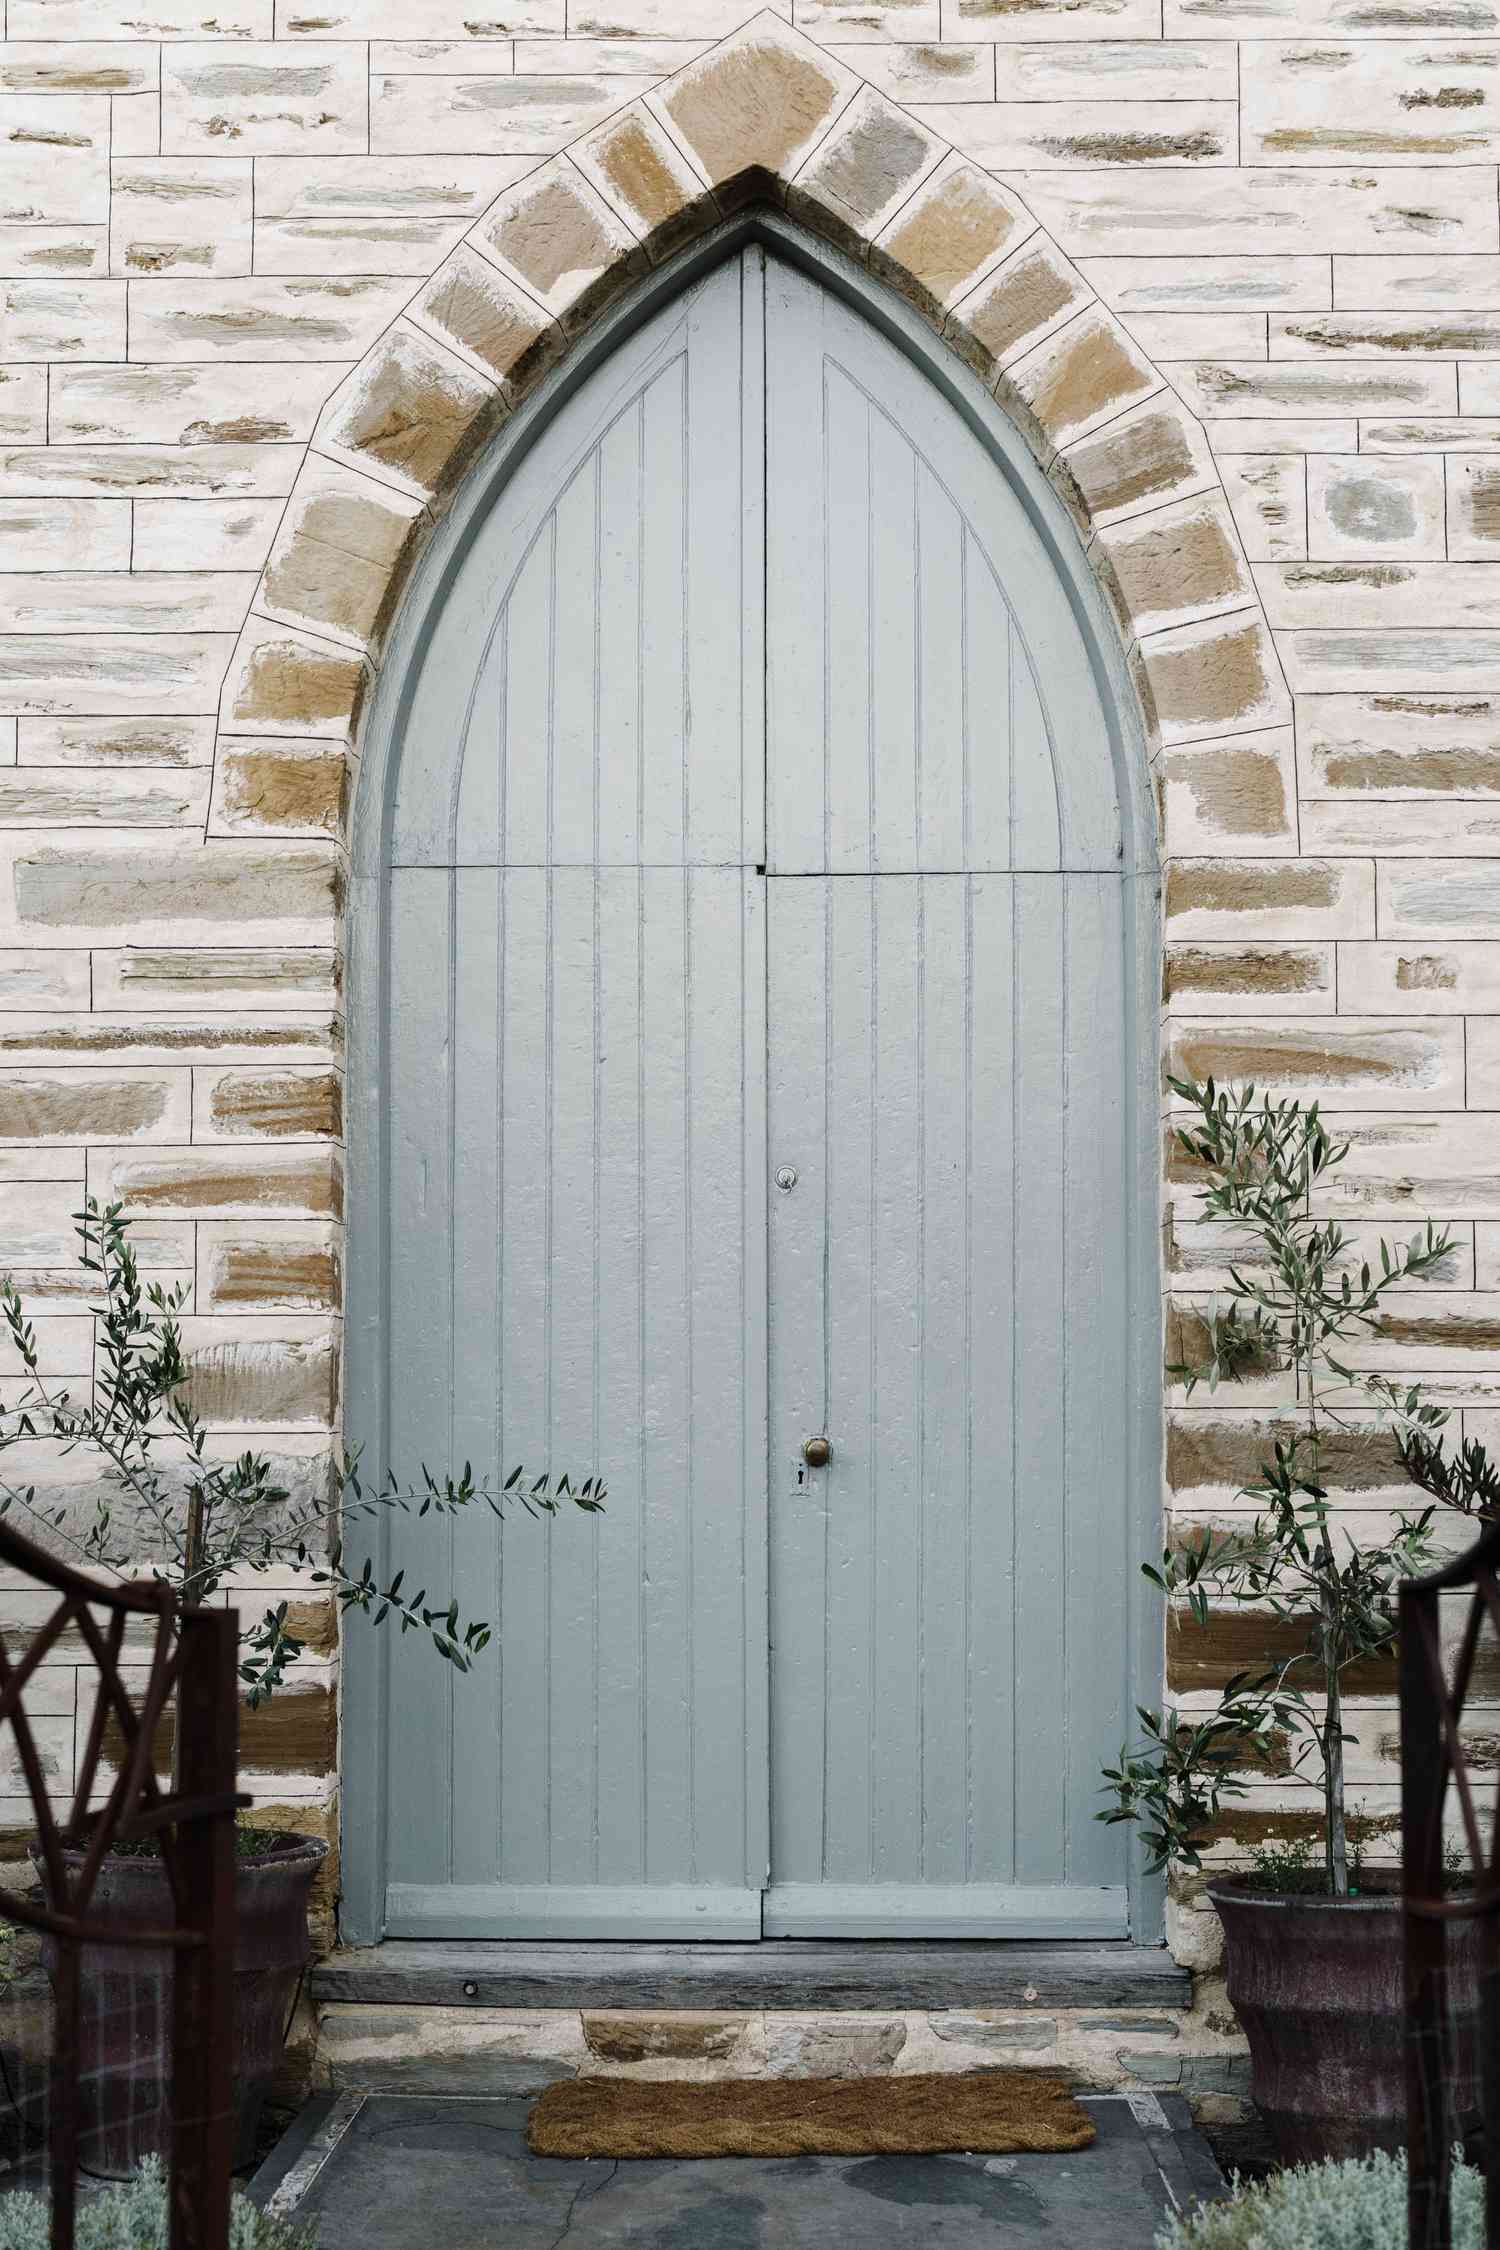 Porta azul da igreja com plantas ao redor